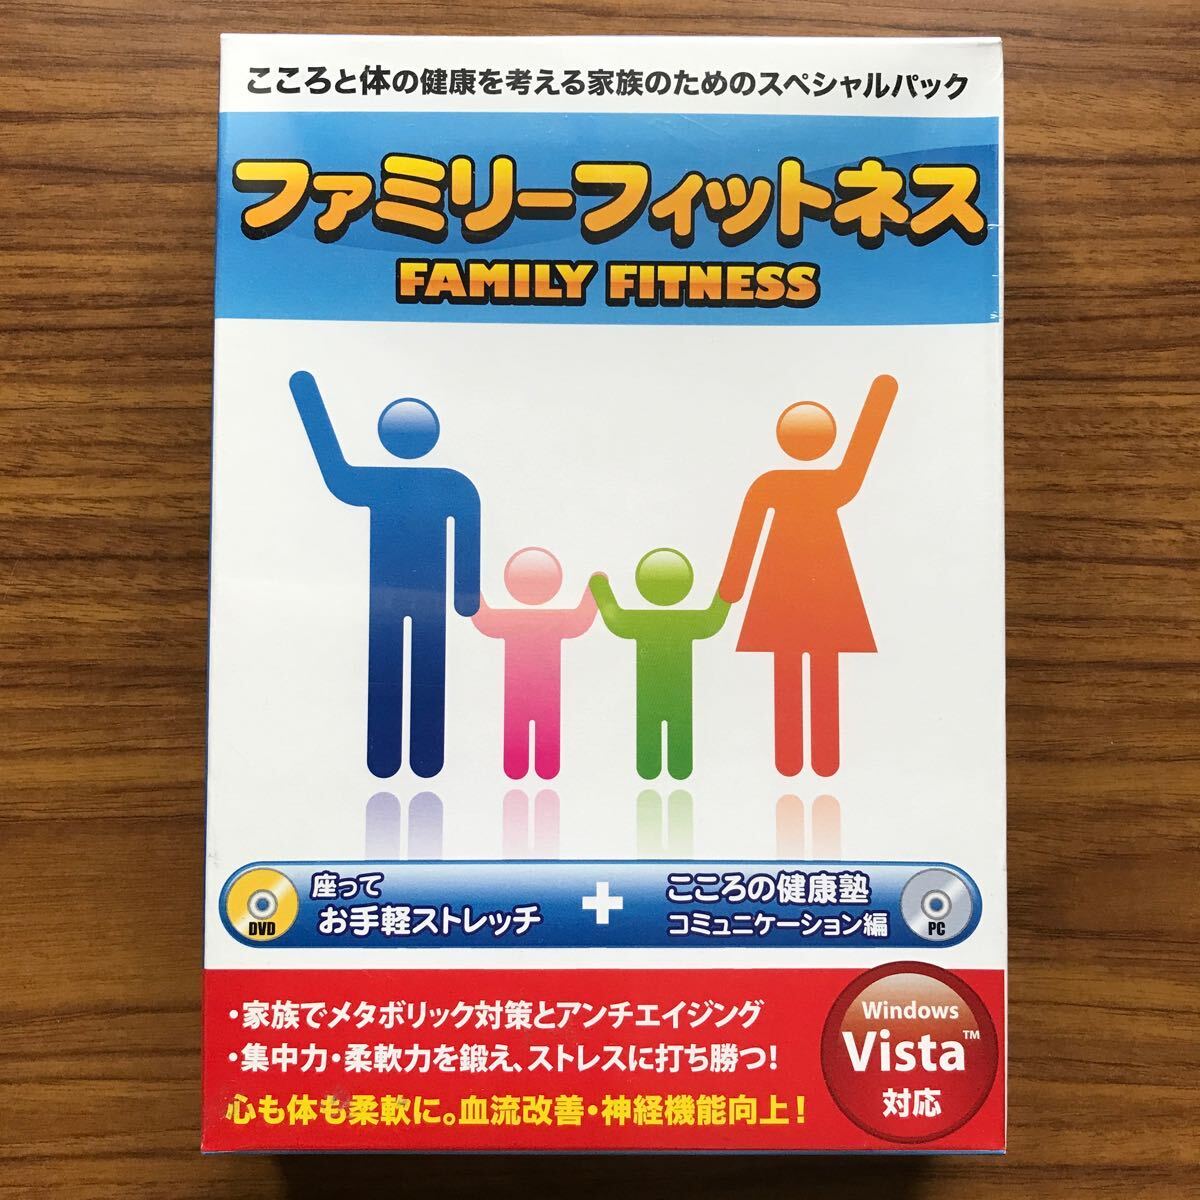  семья   Fit ... ...    простой   стрейч DVD+ здесь  ...   ...PC мягкий  Windows VISTA/XP японский язык  издание  реакция 